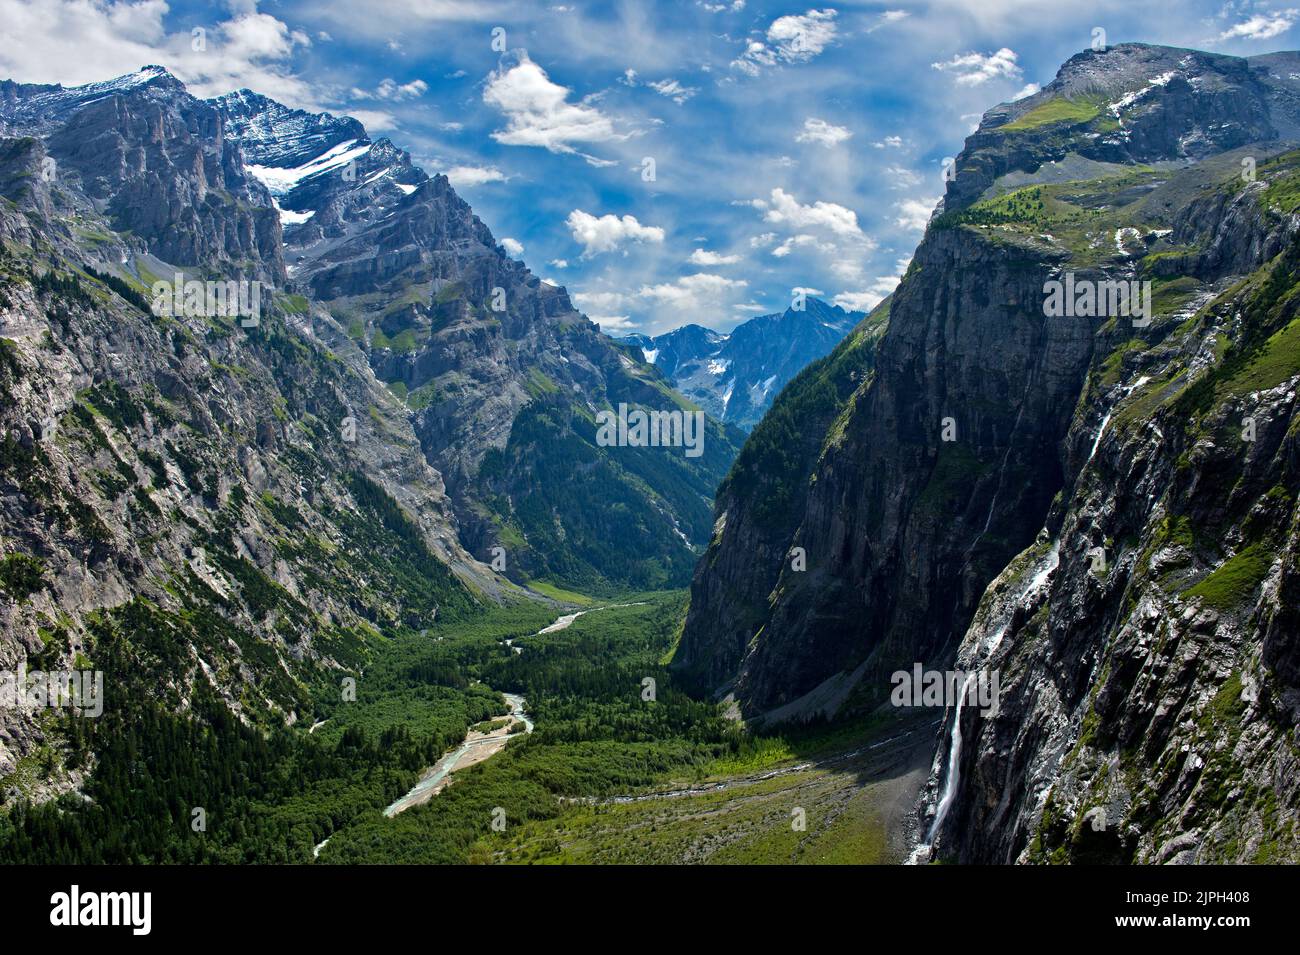 Archétype géologique, vallée en forme de U de Gasterntal, Kandersteg, Oberland bernois, Suisse Banque D'Images